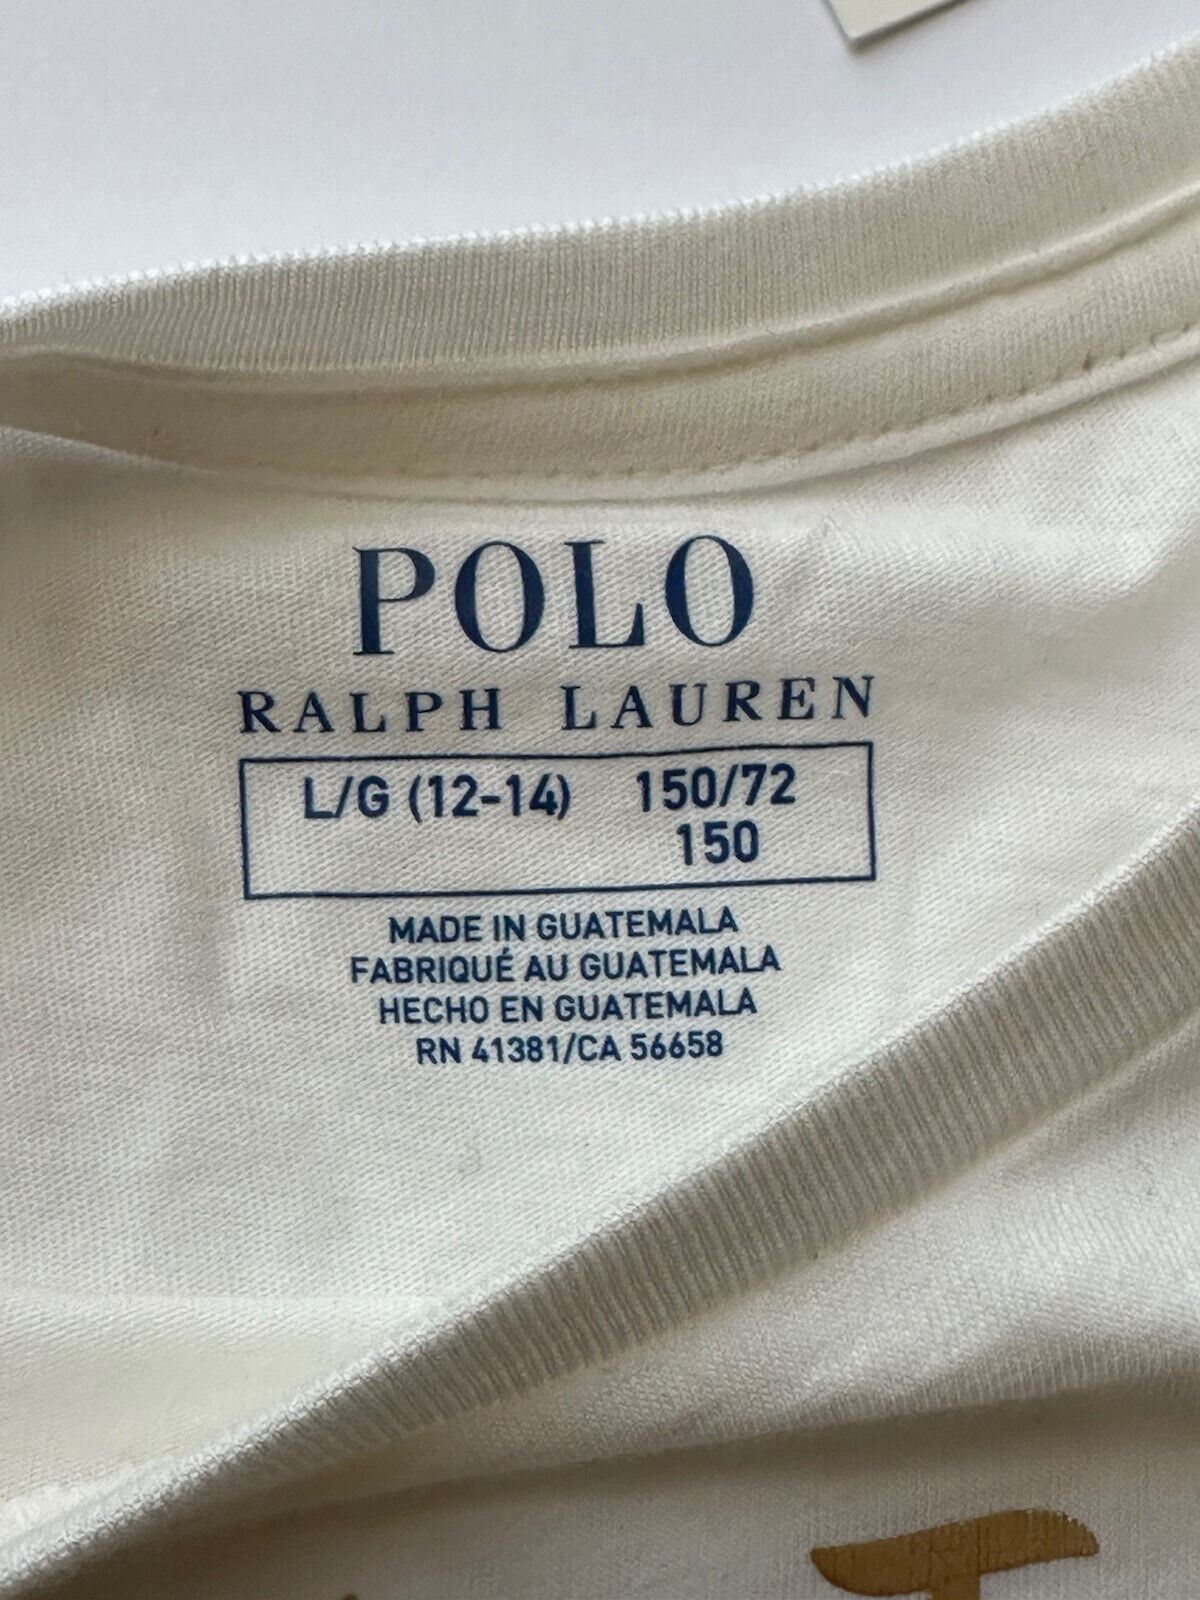 Neu mit Etikett: Polo Ralph Lauren Mädchen-T-Shirt aus weißer Baumwolle mit Bärenmotiv, Größe L/G (12–14) 